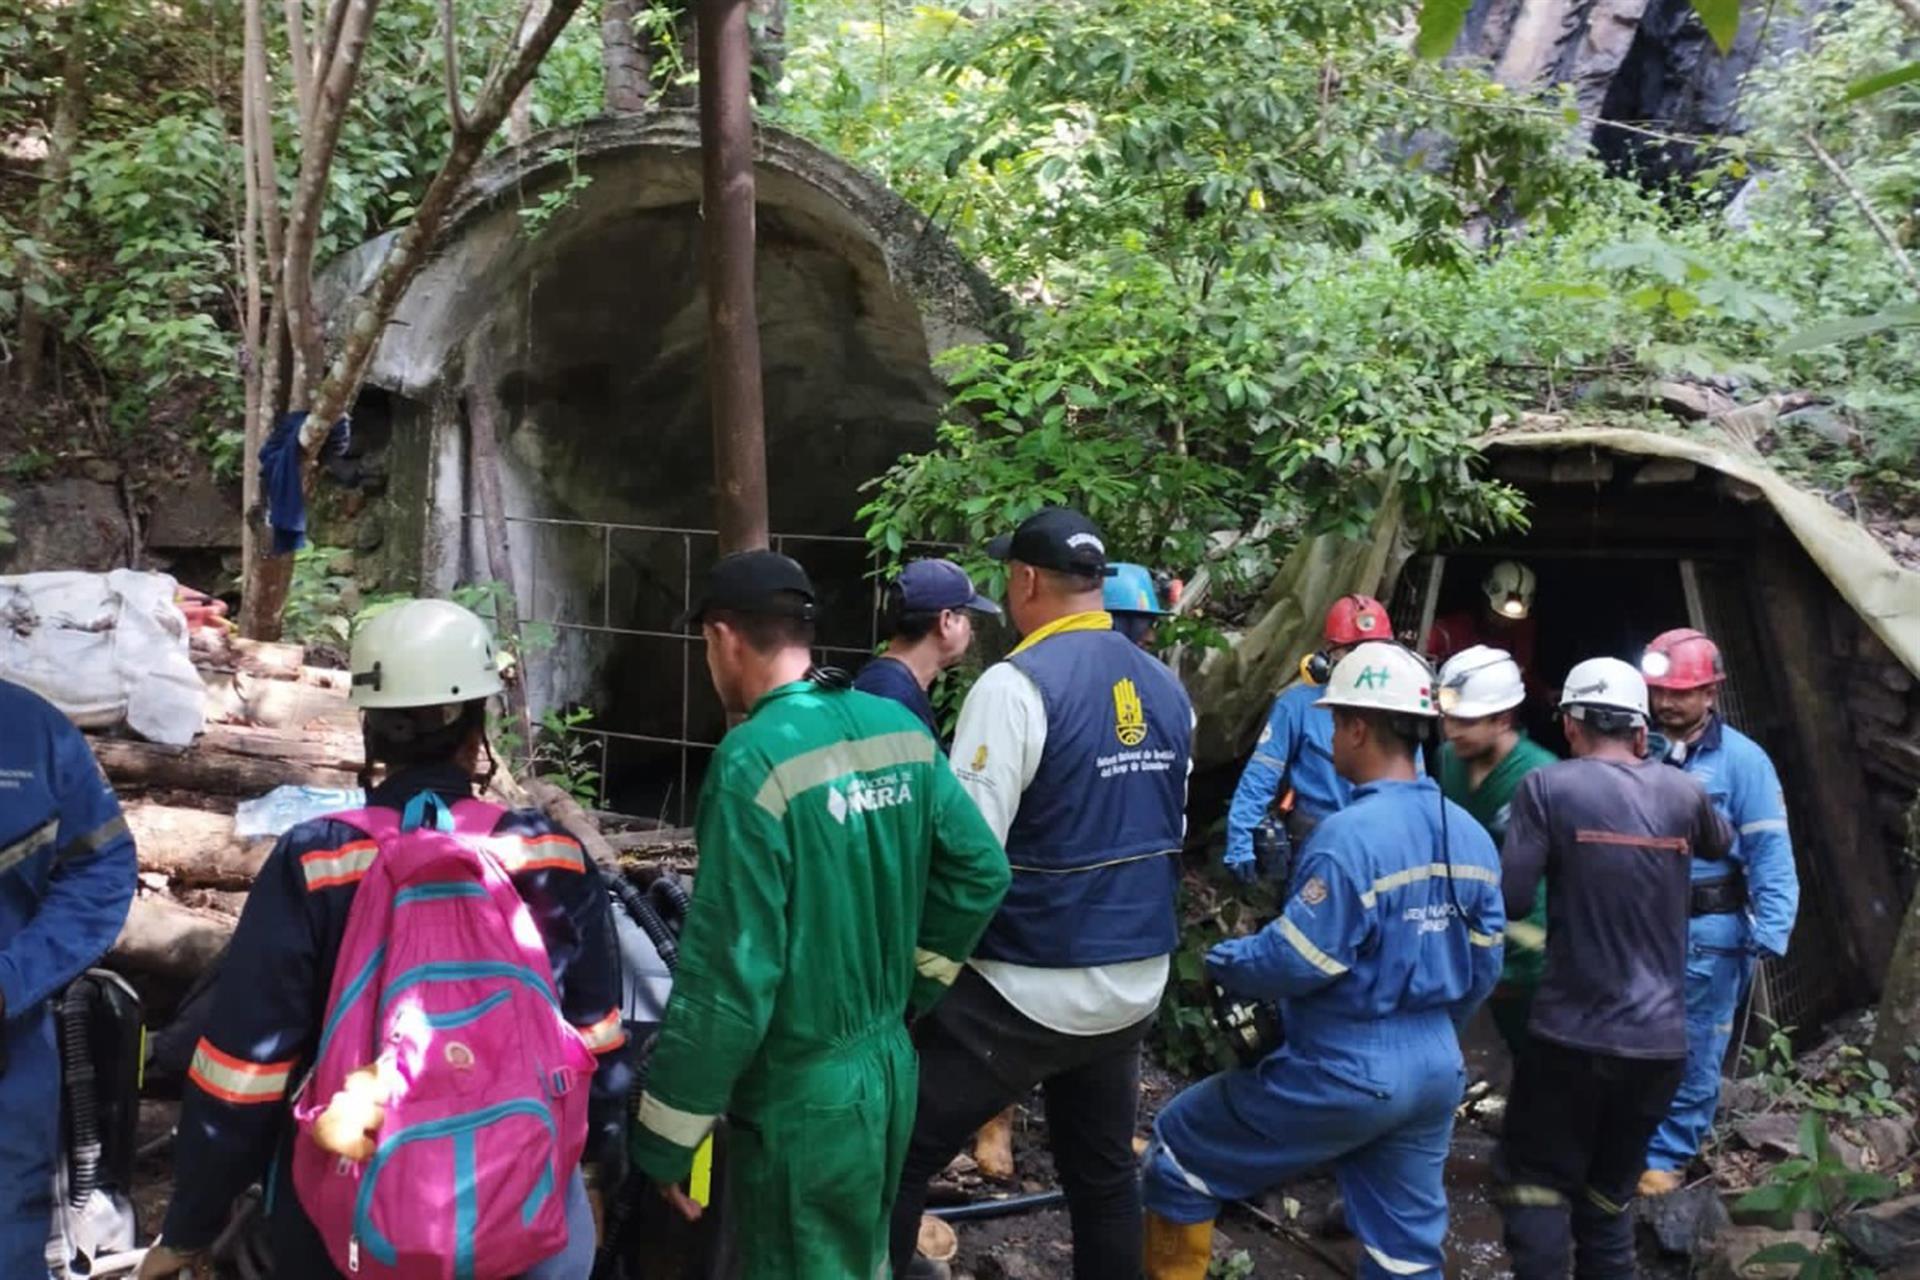 AME3866. EL ZULIA (COLOMBIA), 31/05/2022.- Fotografía cedida hoy por la Agencia Nacional de Minería de Colombia que muestra la operación de búsqueda que realizan organismos de rescate en una mina de carbón en El Zulia, Norte de Santander (Colombia). El minero que fue rescatado de una mina de carbón en El Zulia, en el noreste de Colombia, donde el lunes se produjo una explosión que dejó otros 14 obreros atrapados, murió este martes debido a la gravedad de las quemaduras sufridas, informaron fuentes oficiales. EFE/ Agencia Nacional de Minería de Colombia /SOLO USO EDITORIAL SOLO DISPONIBLE PARA ILUSTRAR LA NOTICIA QUE ACOMPAÑA (CRÉDITO OBLIGATORIO) MÁXIMA CALIDAD DISPONIBLE